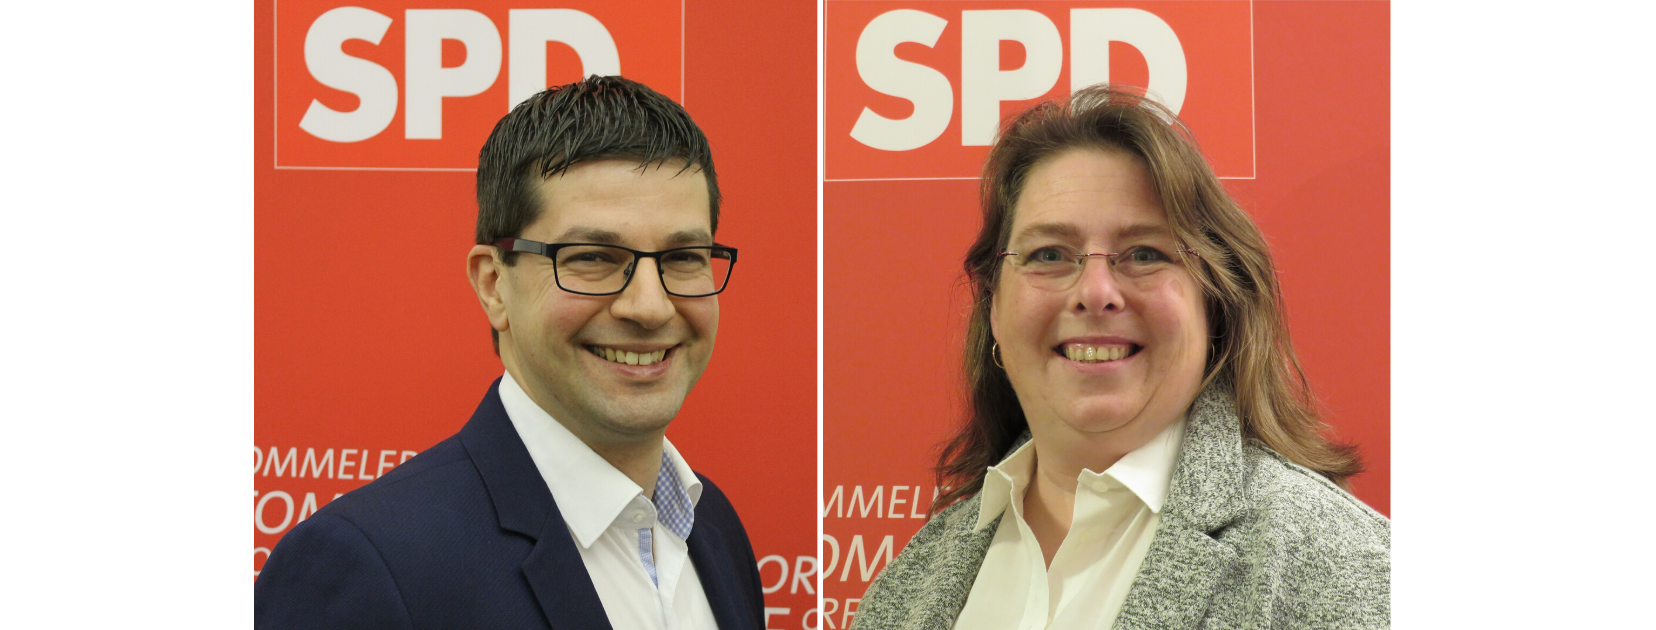 Die BewerberInnen zur BM Kandidatur der SPD Pulheim: Alexander Toth und Marion Reiter